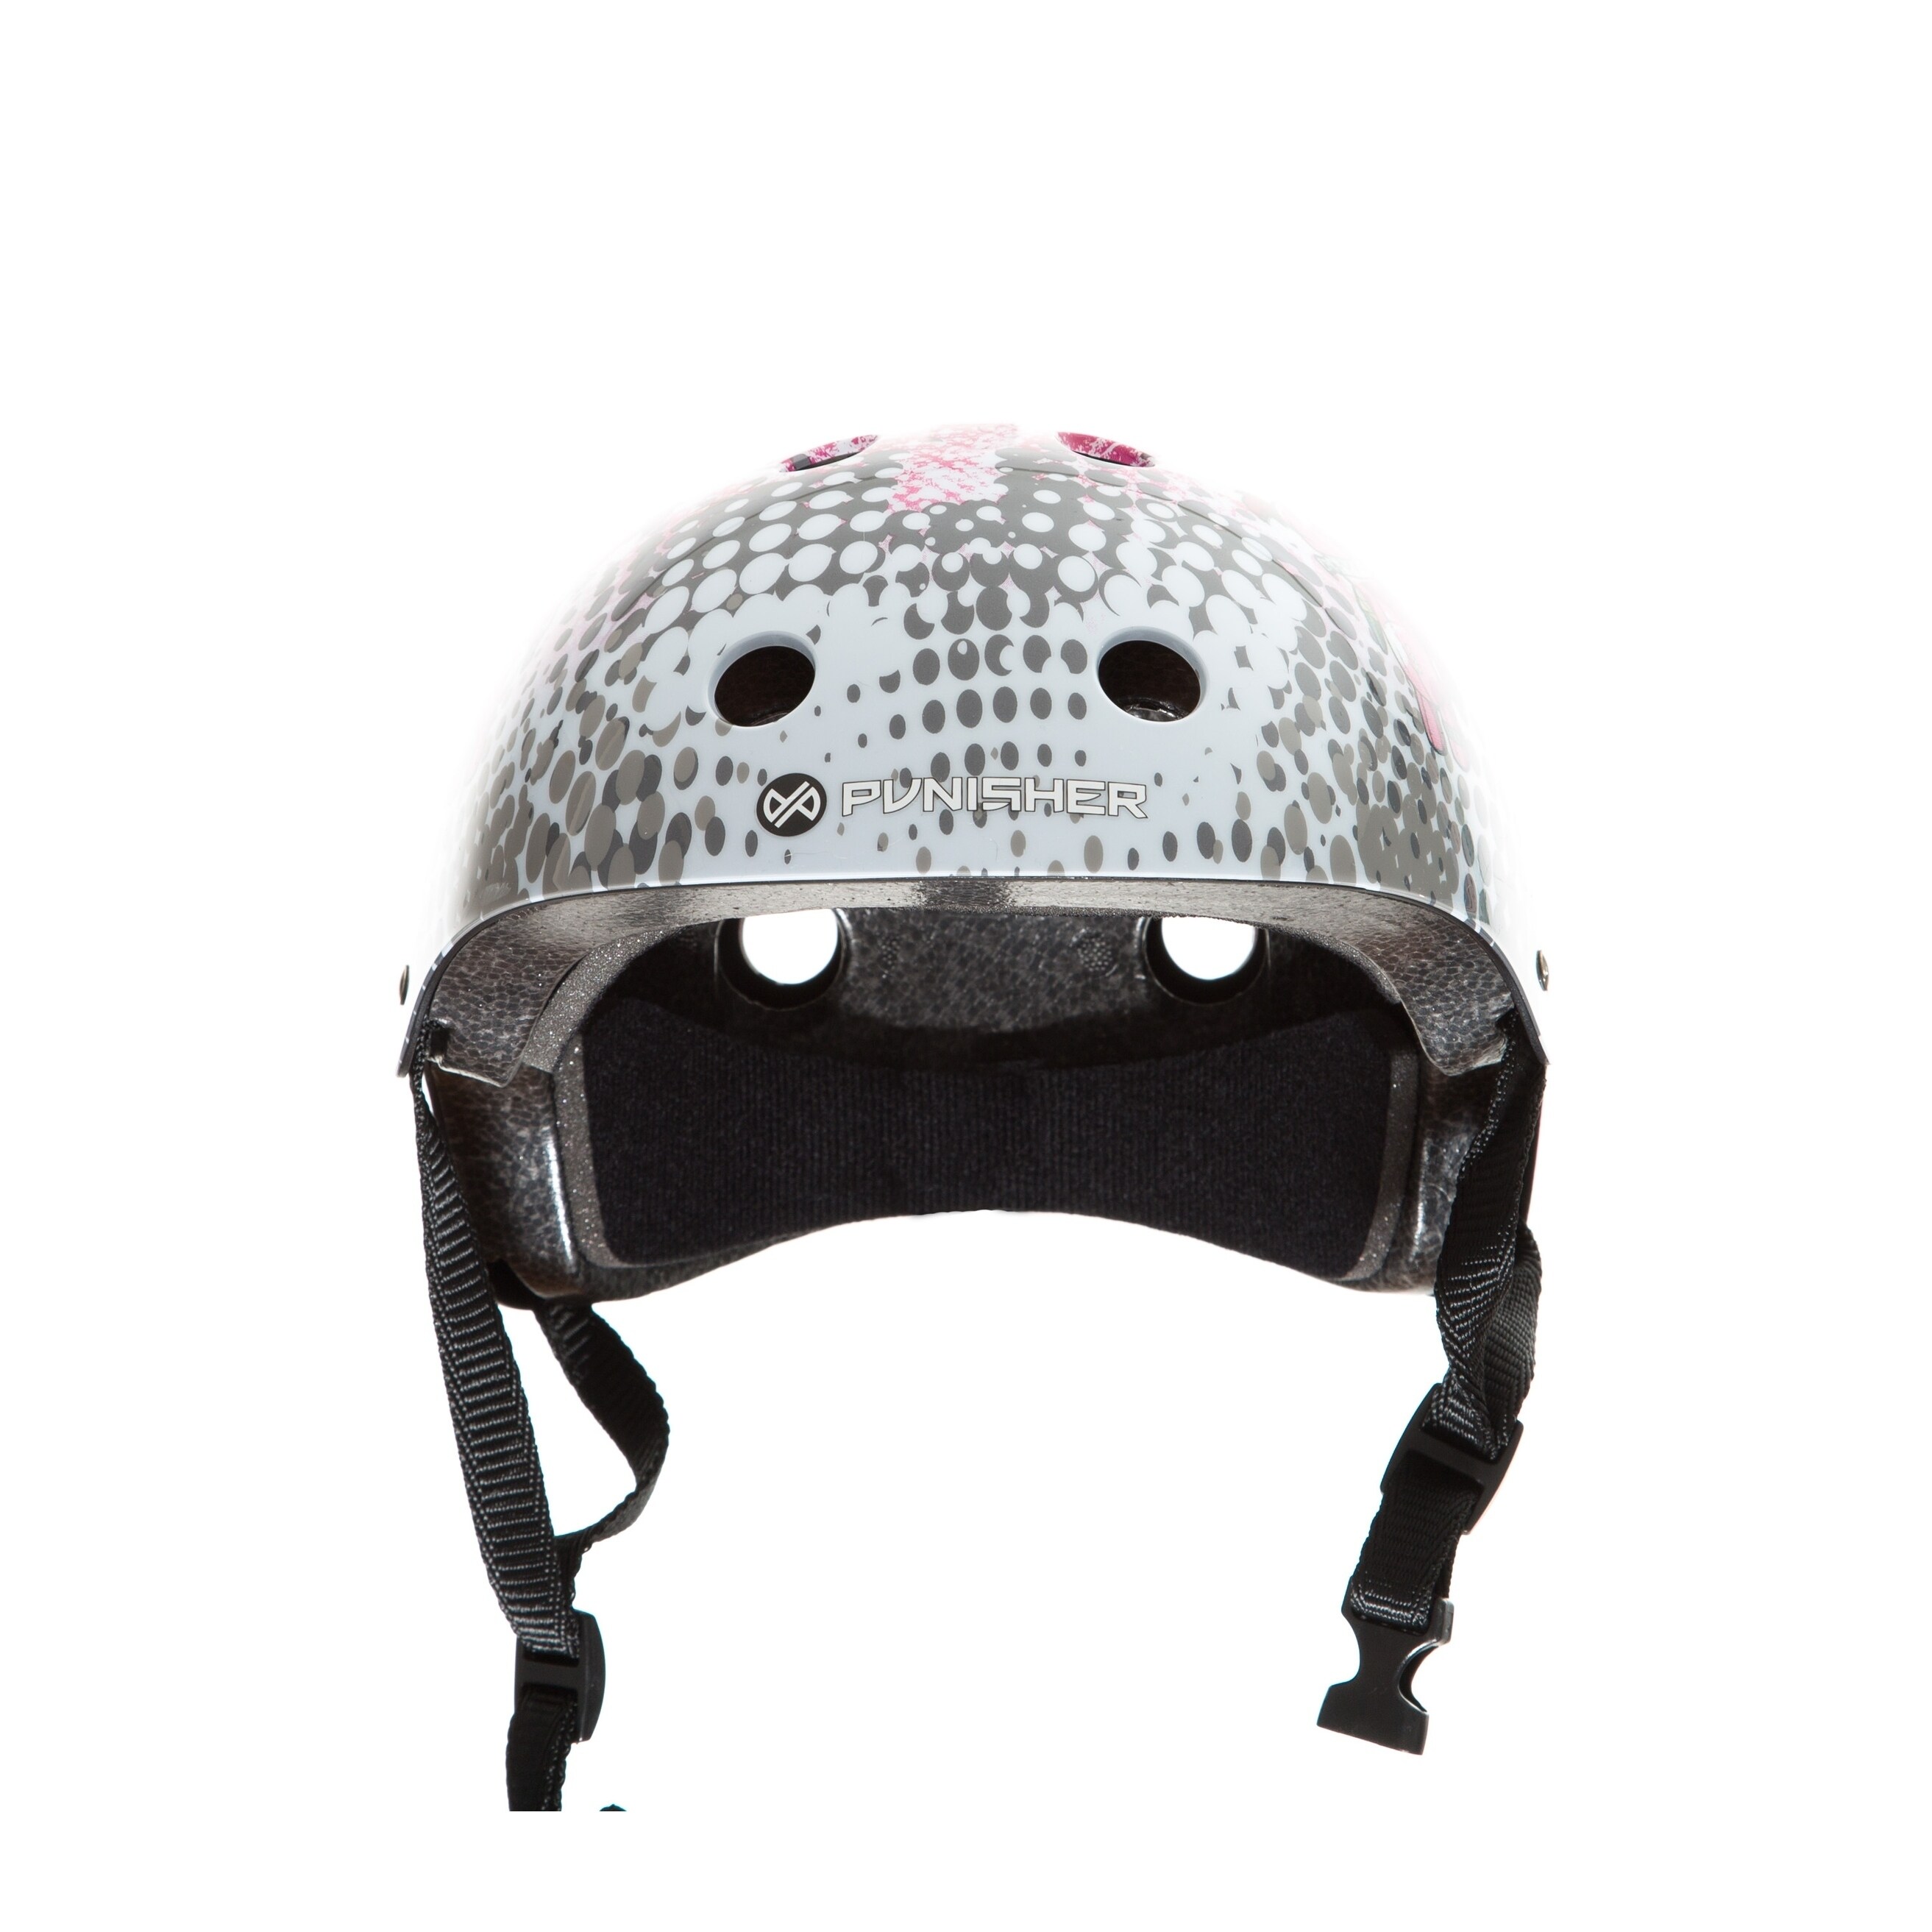 voodoo bike helmet